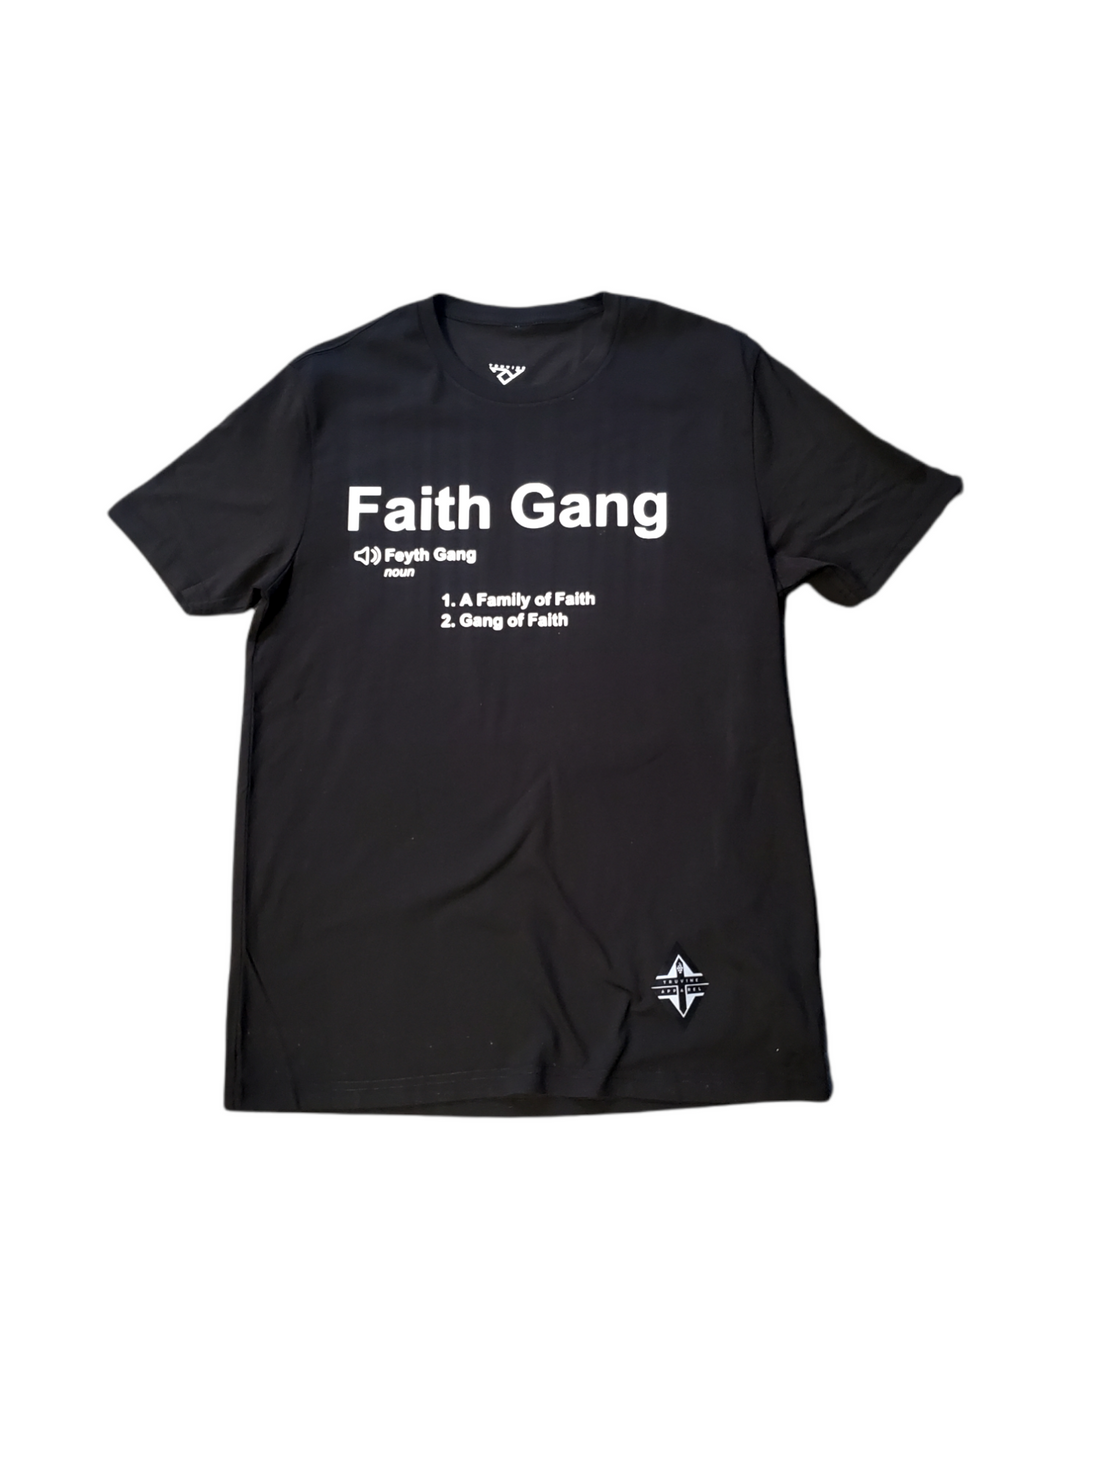 Faith Gang Collection (family of faith)